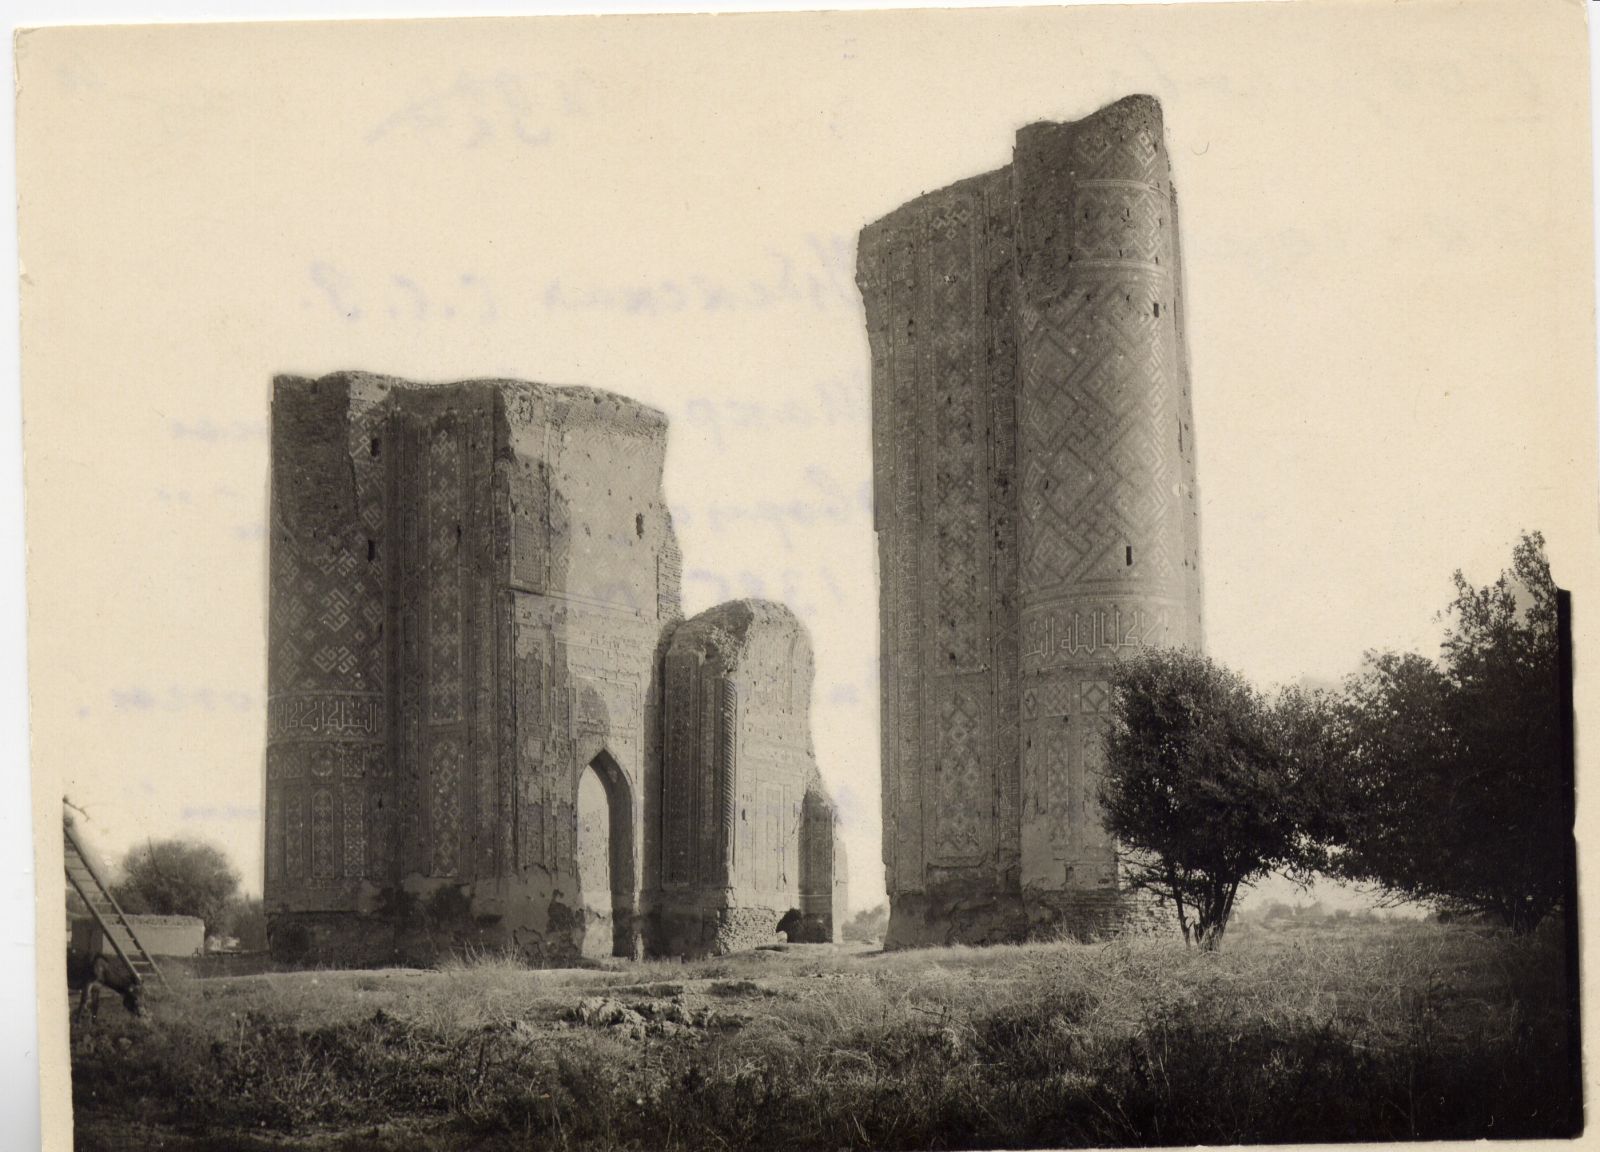 Узбекская ССР. Шахрисябз. Руины дворца "Ак Сарай". 1385-1405 гг. Вид с северной стороны